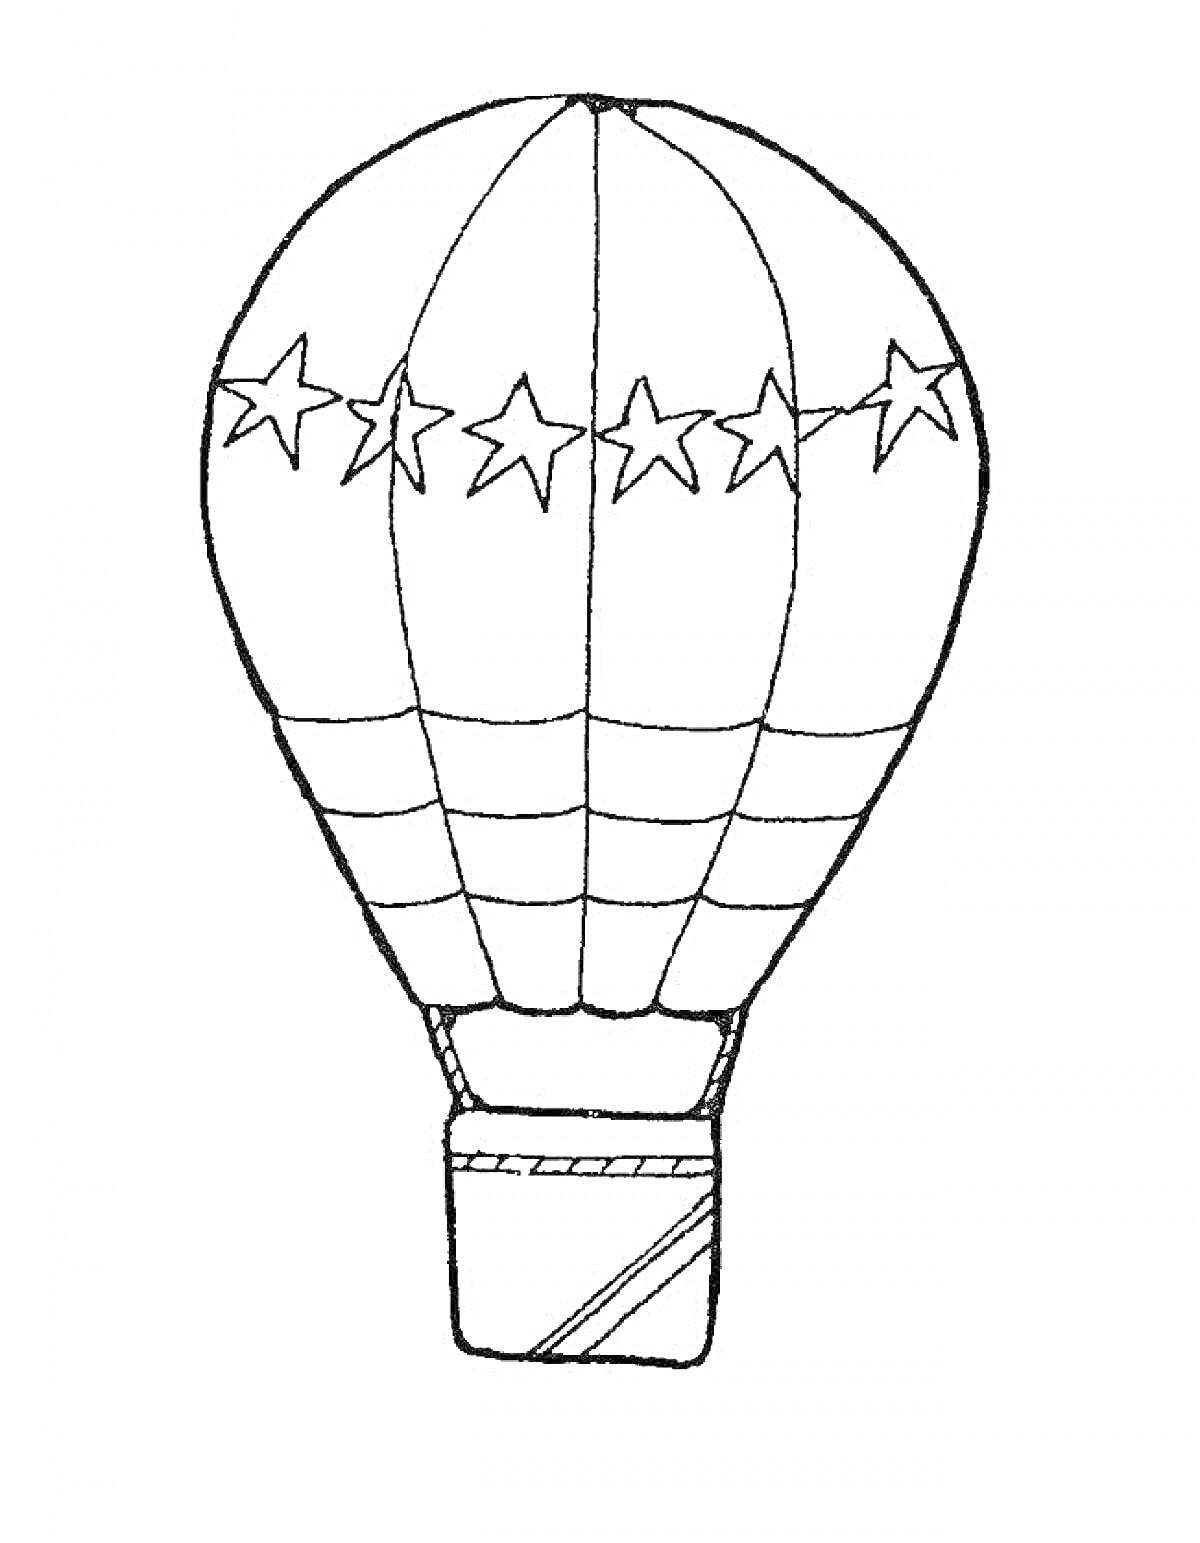 Раскраска Воздушный шар с узором из звезд и полосок